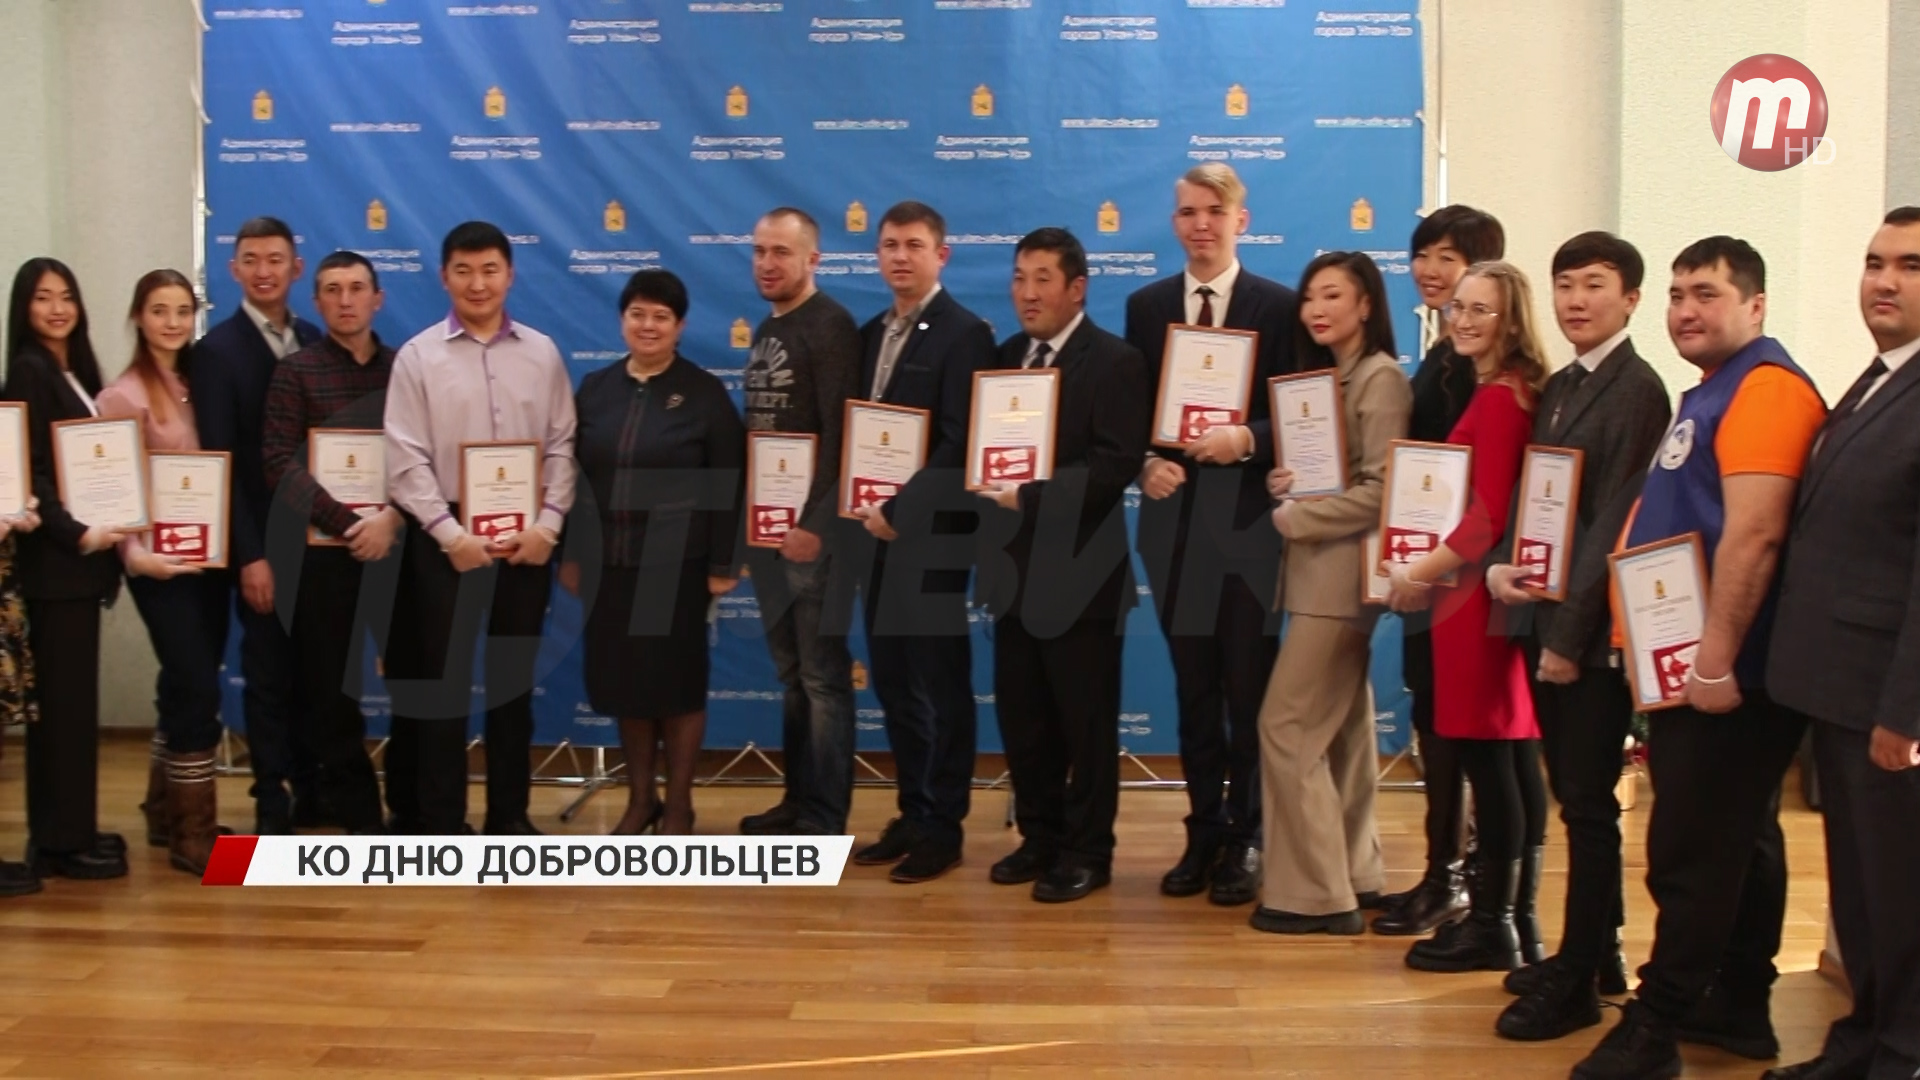 В преддверии международного дня добровольцев в Улан-Удэ наградили волонтеров